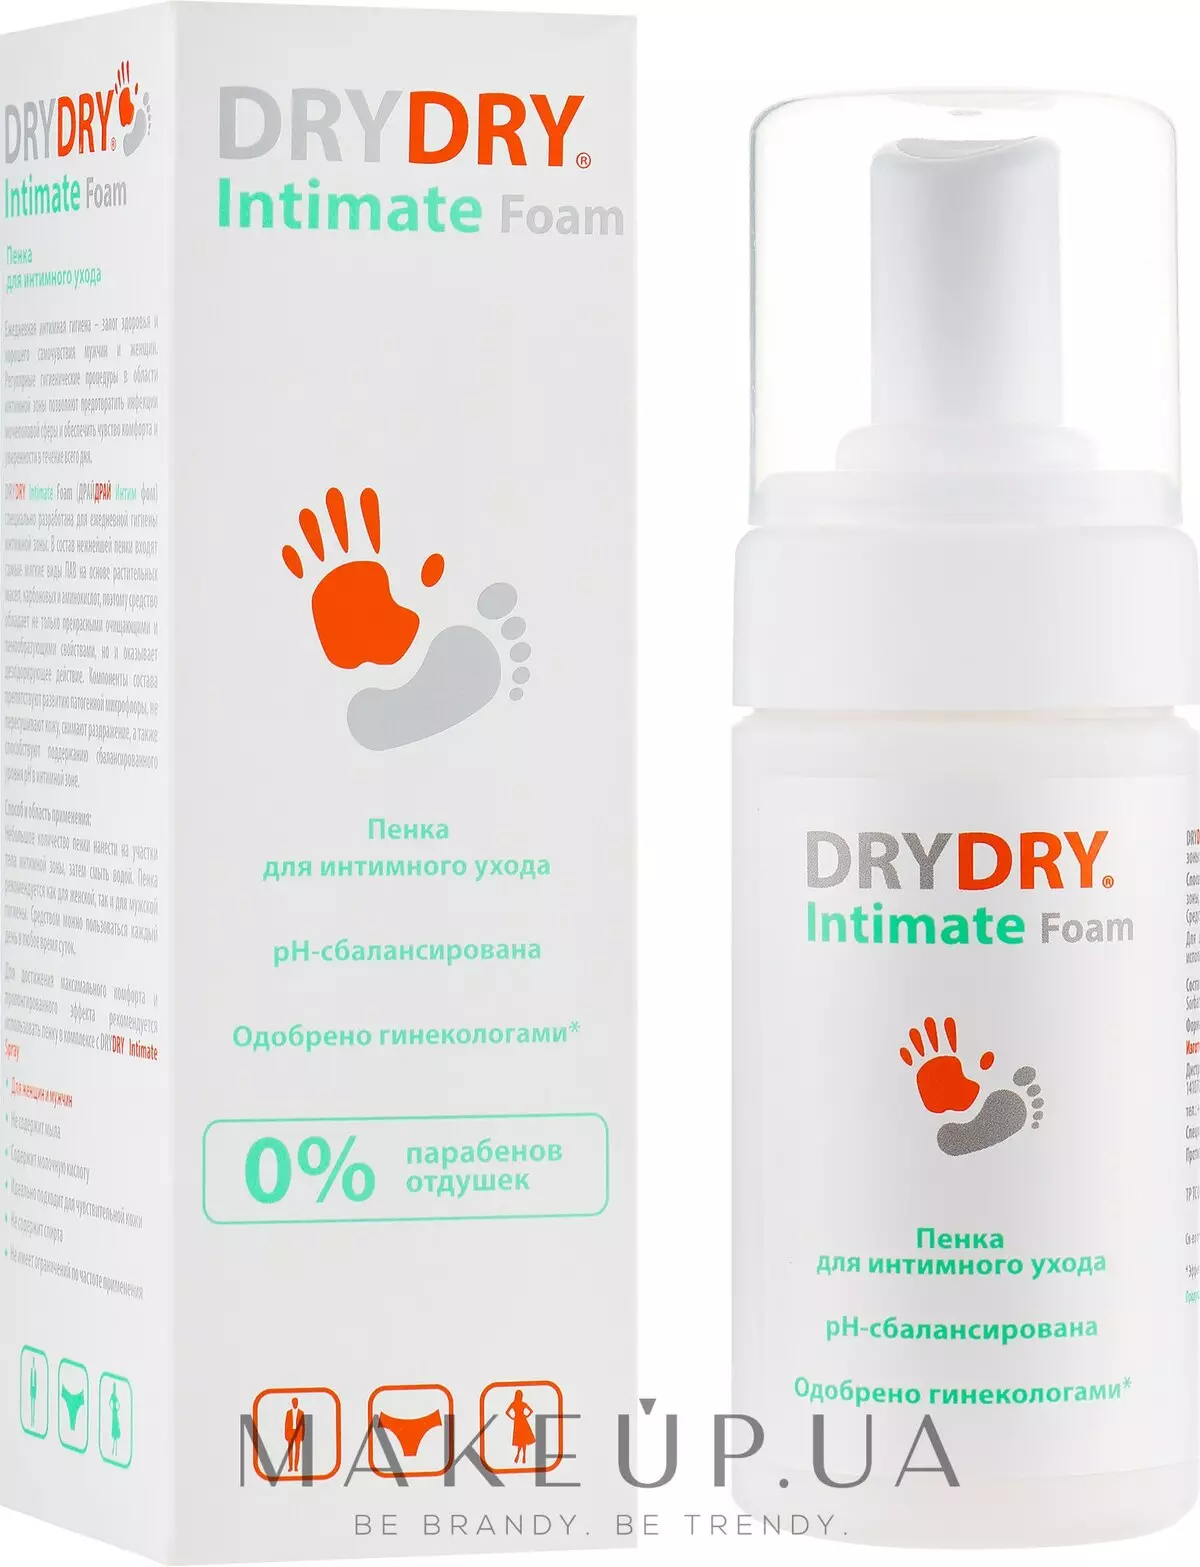 deodoran DRY DRY (34 foto): jenis antiperspirants, arahan penggunaan. Adalah komposisi deodoran berbahaya? Ulasan doktor 4546_4